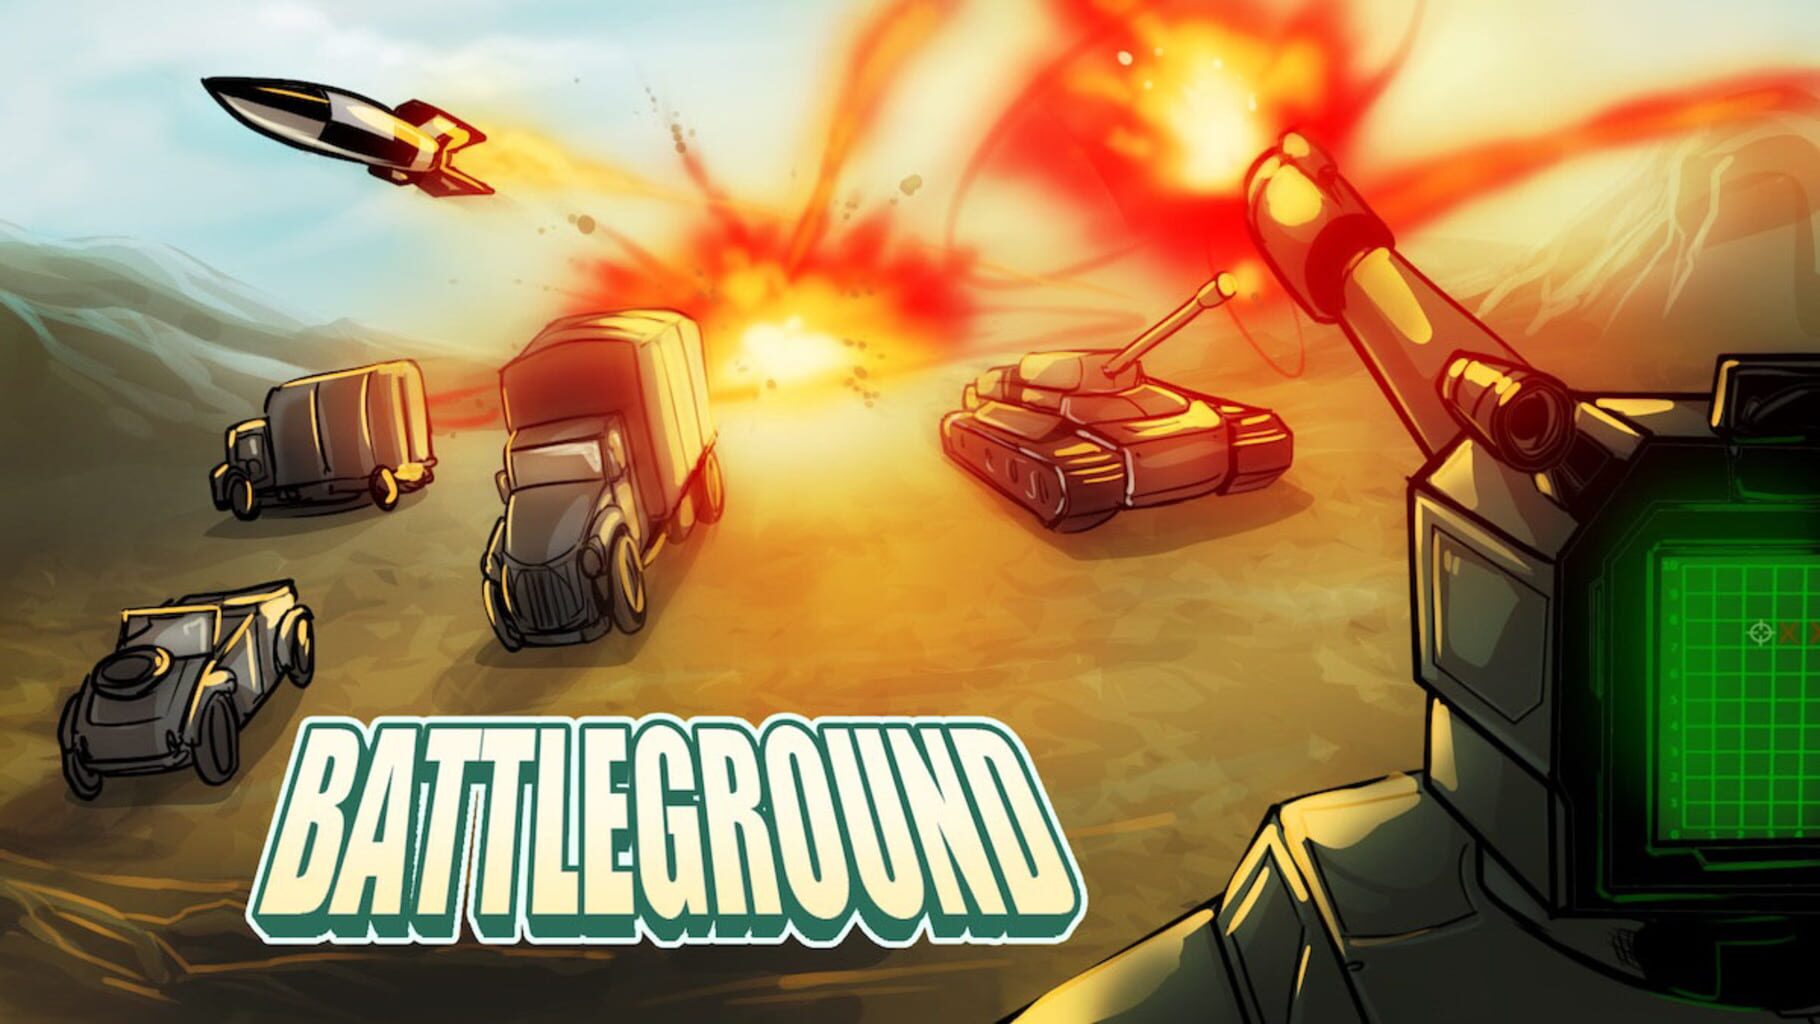 Battleground artwork